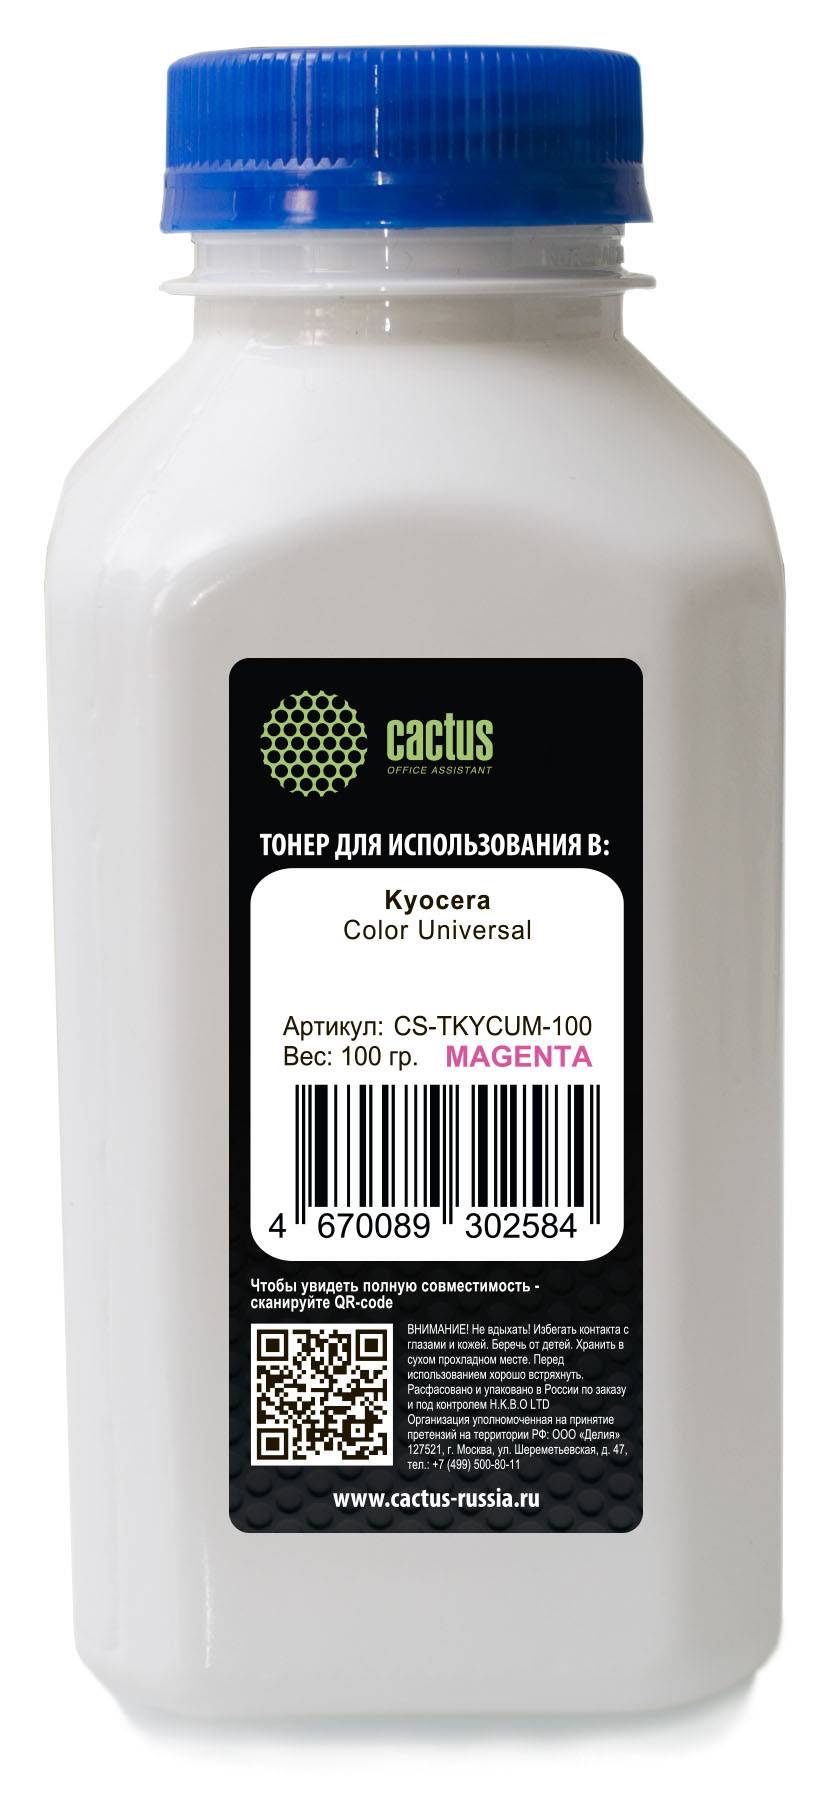 Тонер для принтера Cactus CS-TKYCUM-100 пурпурный 100 грамм